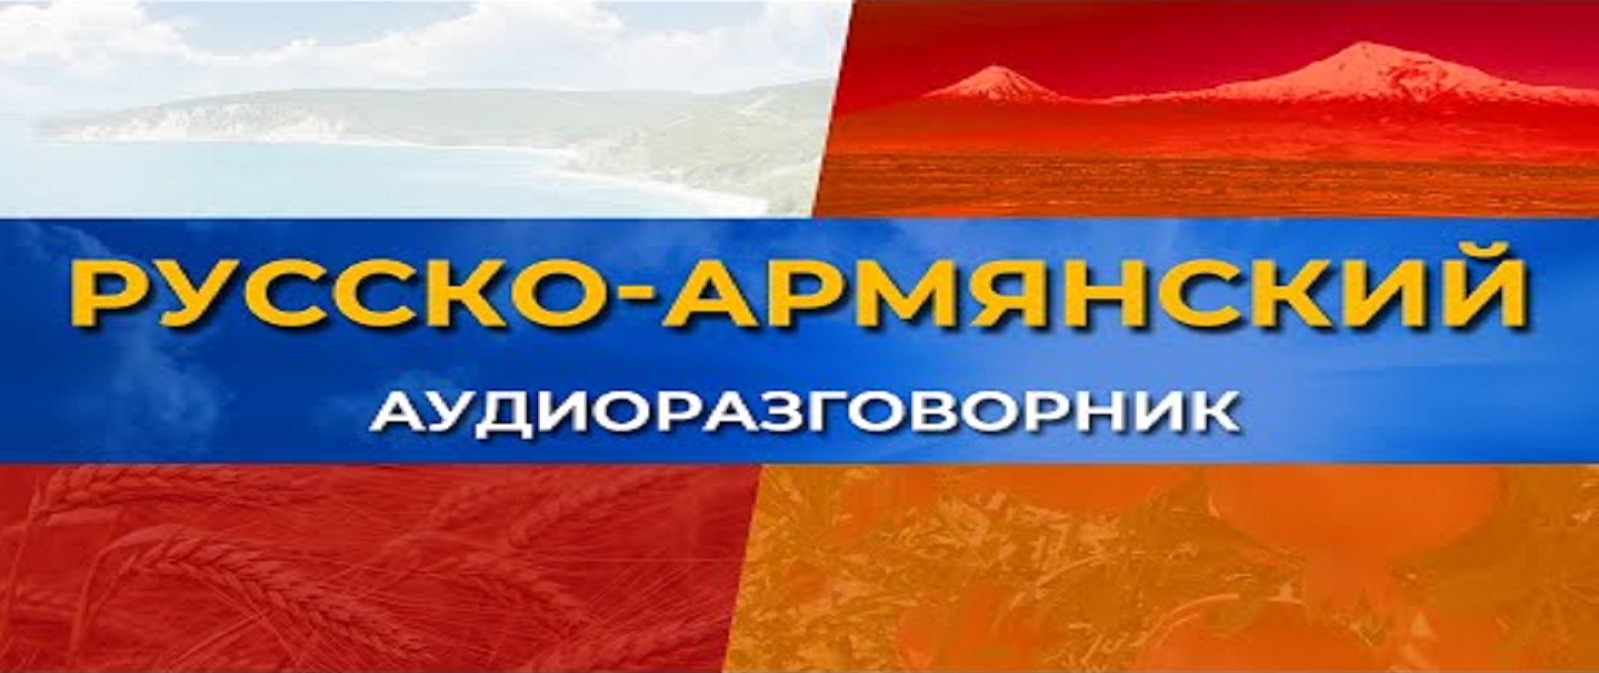 Русско-армянский аудио-разговорник/HAYK media